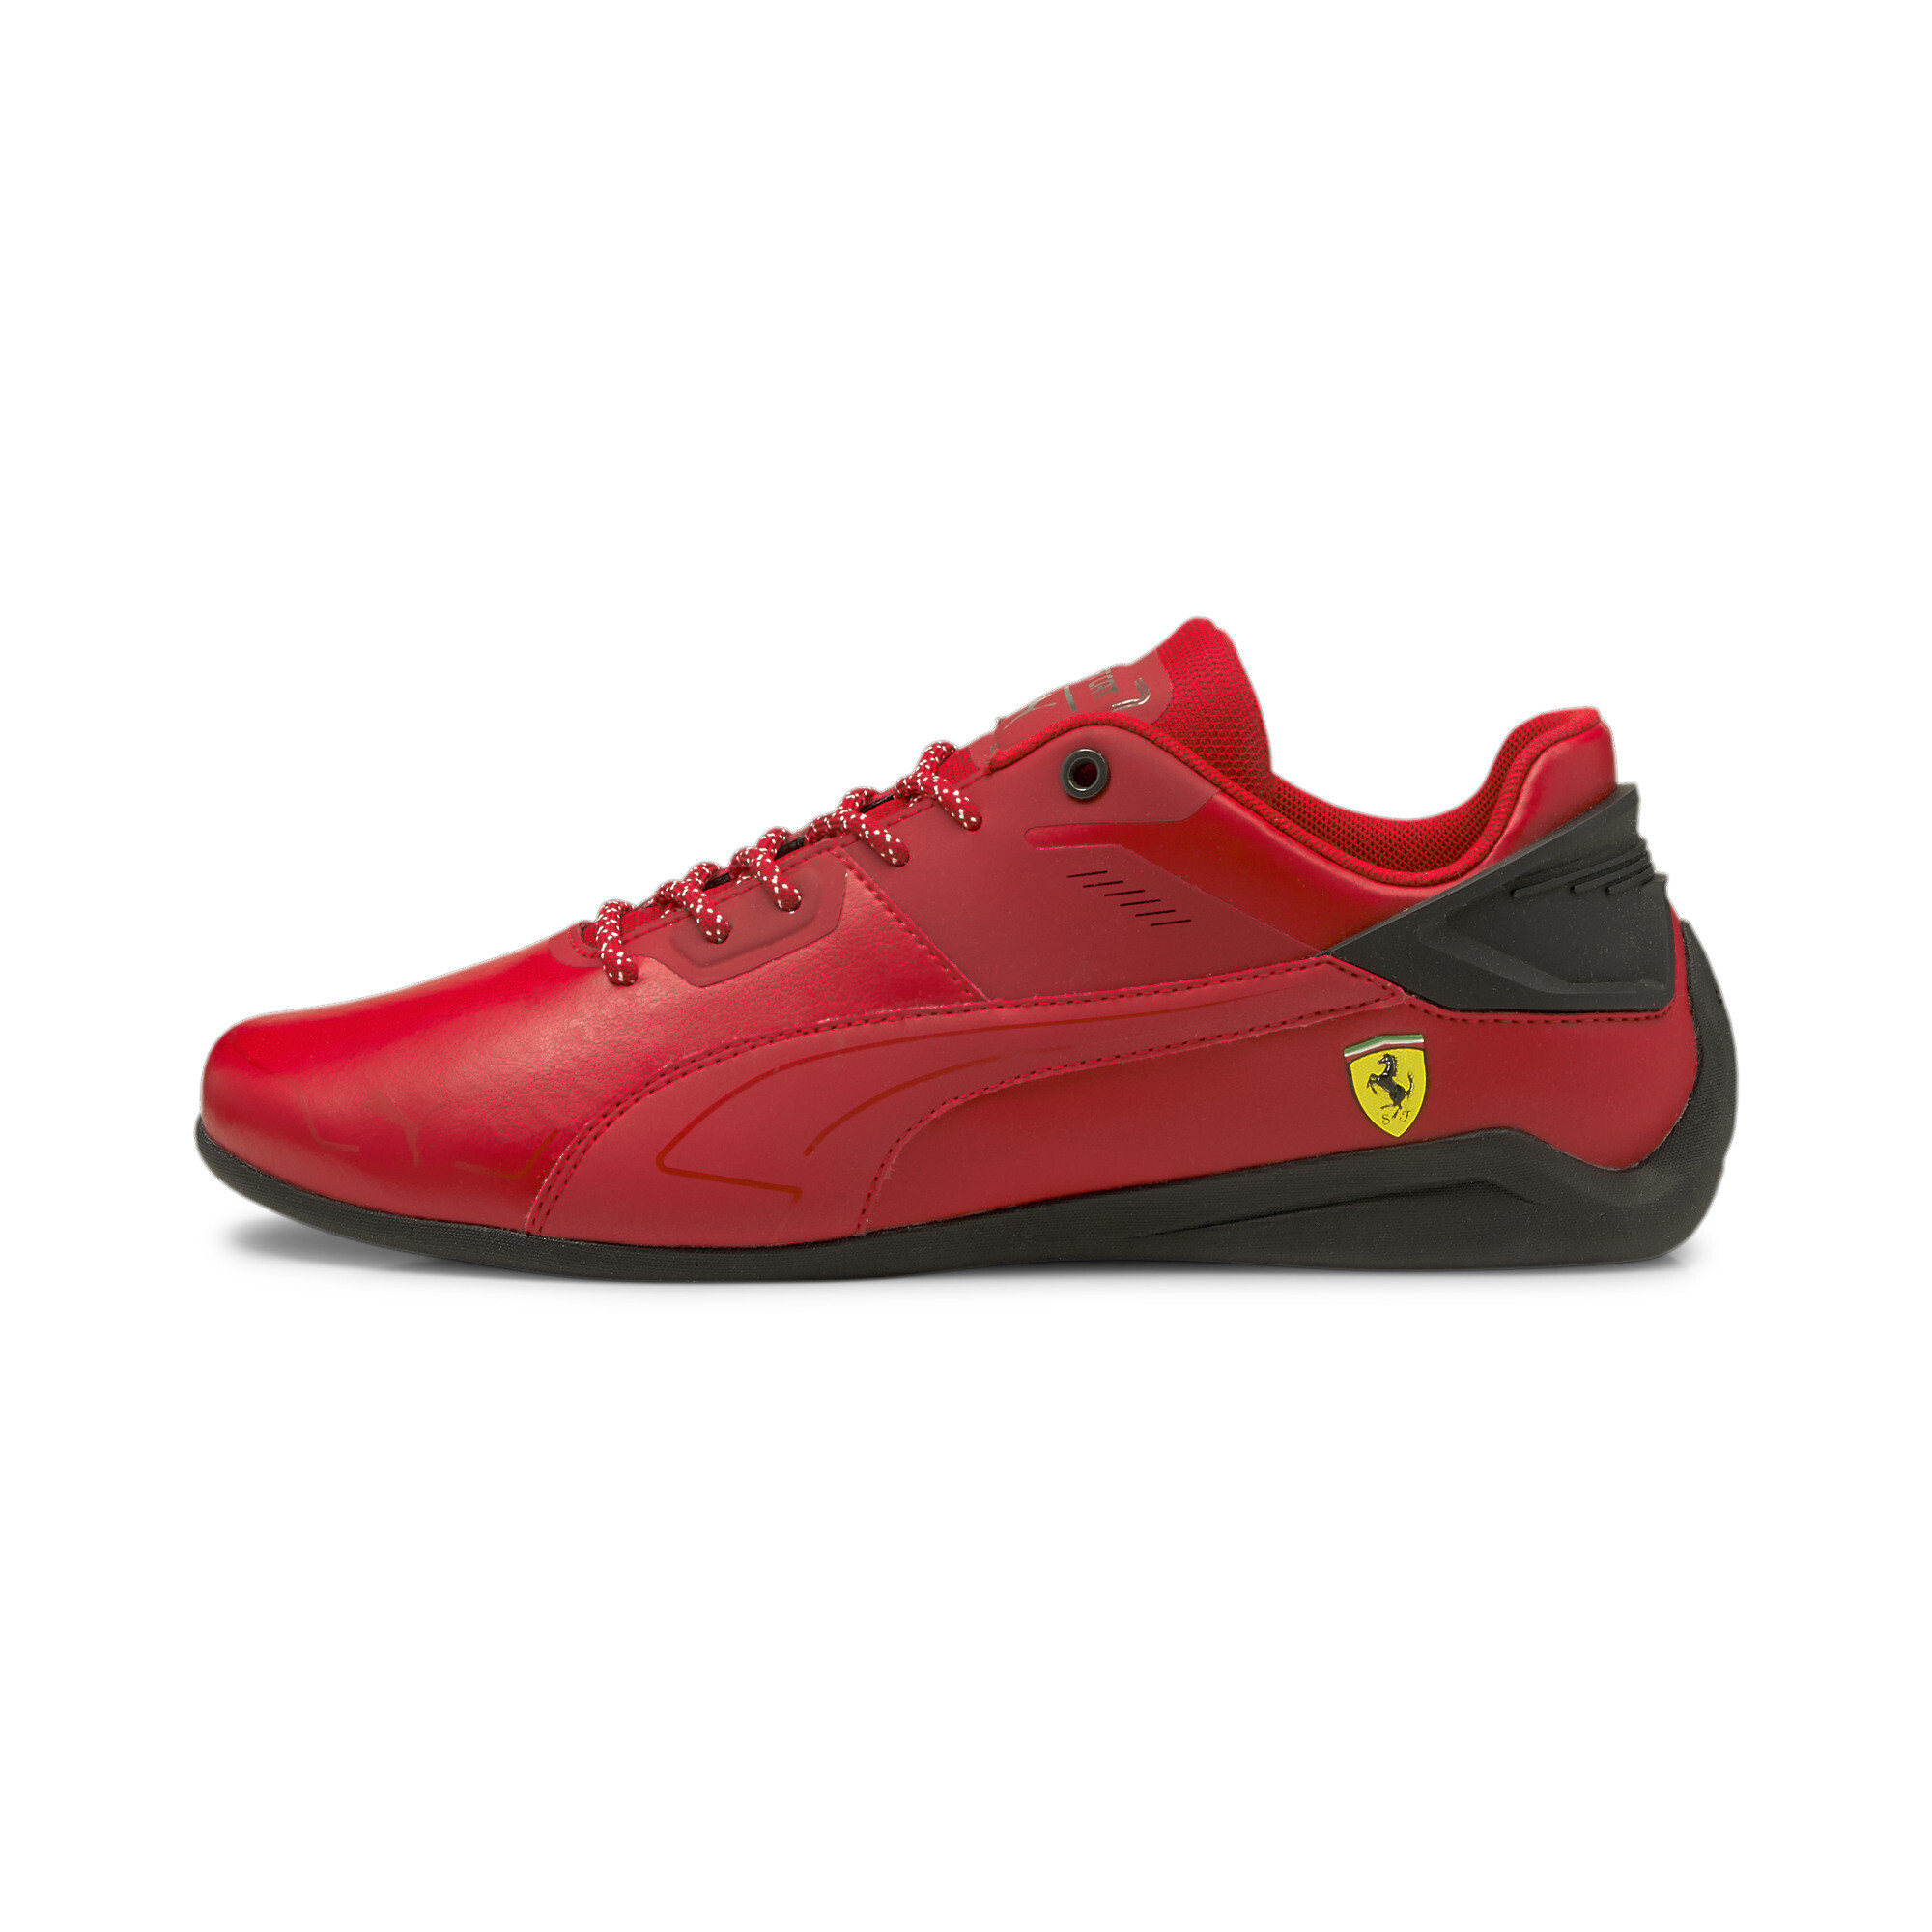 دولاب المنيوم للتخزين PUMA Men's Scuderia Ferrari Drift Cat Delta Motorsport Shoes | eBay دولاب المنيوم للتخزين